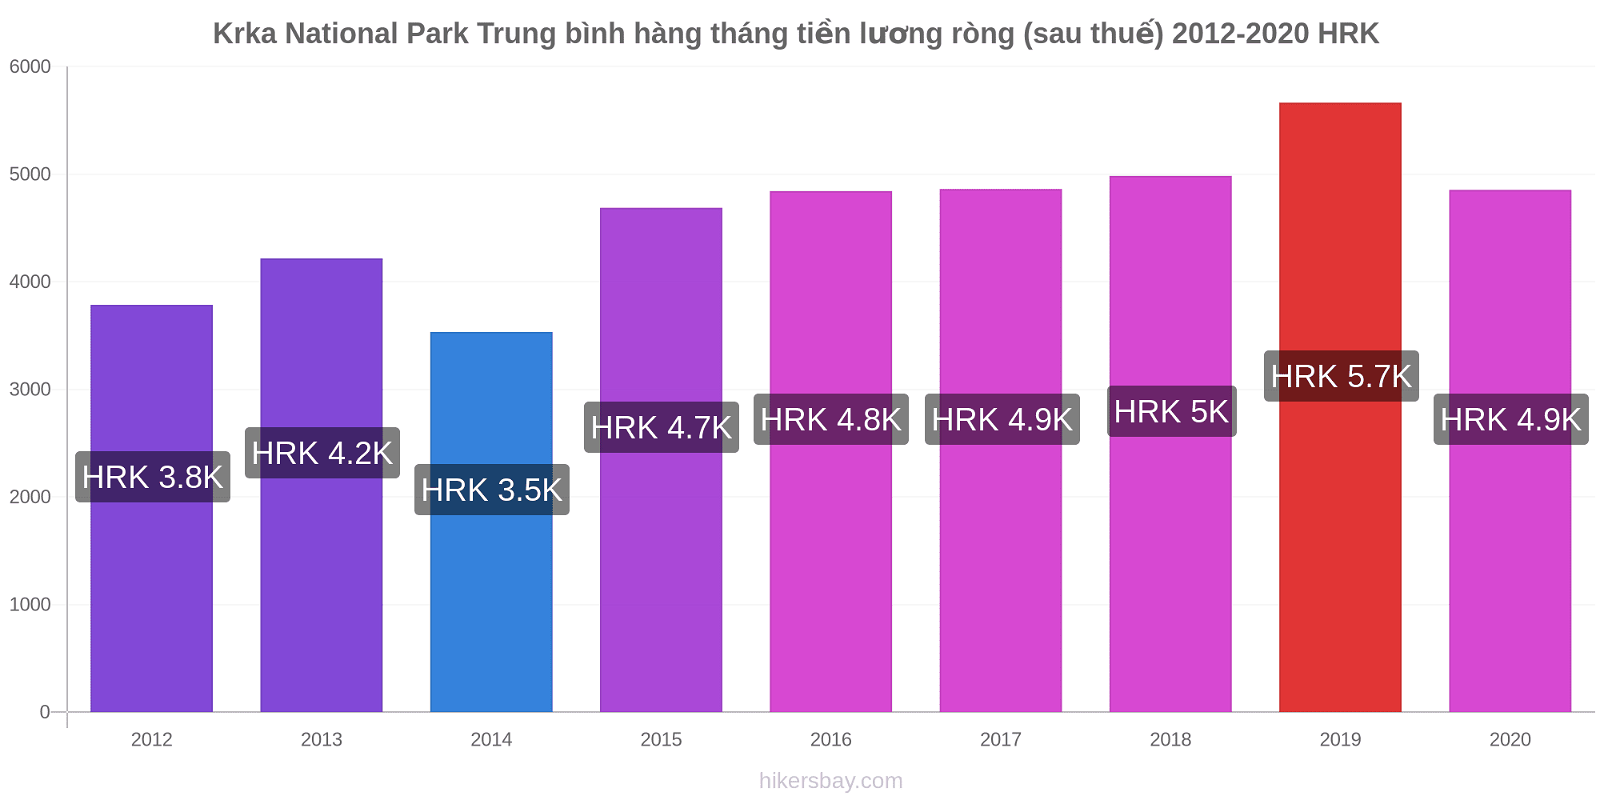 Krka National Park thay đổi giá Trung bình hàng tháng tiền lương ròng (sau thuế) hikersbay.com